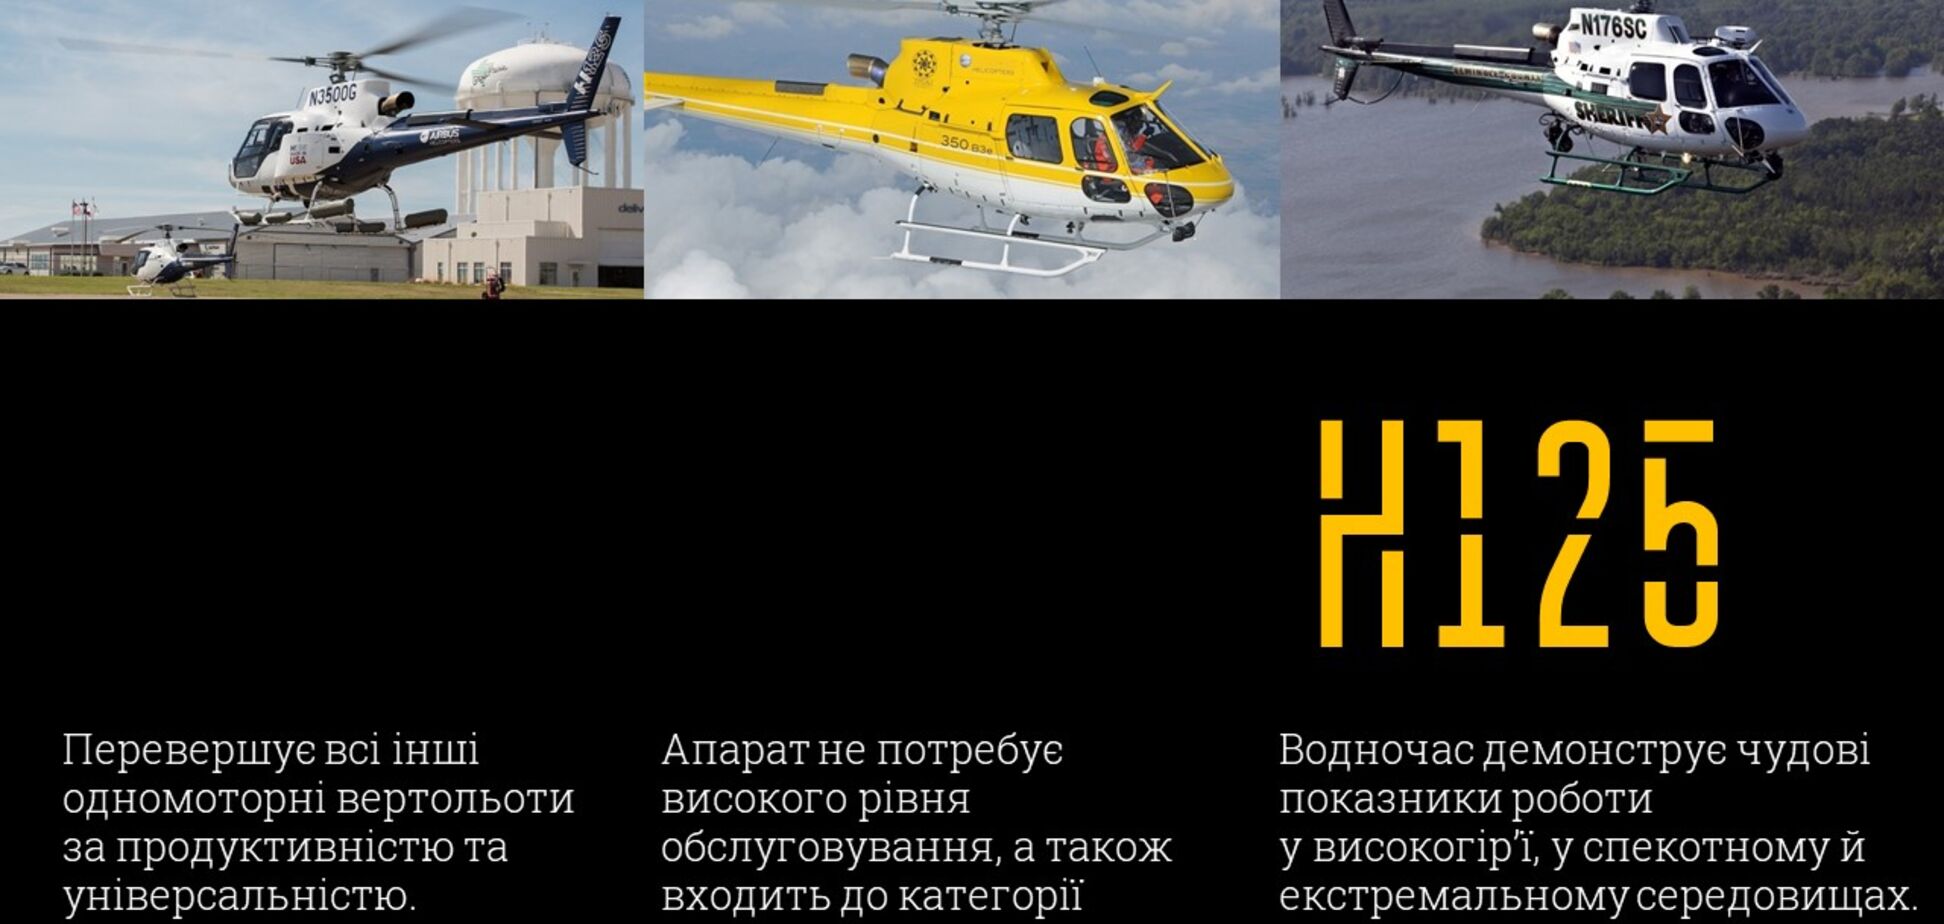 Украинская полиция будет летать на новых вертолетах